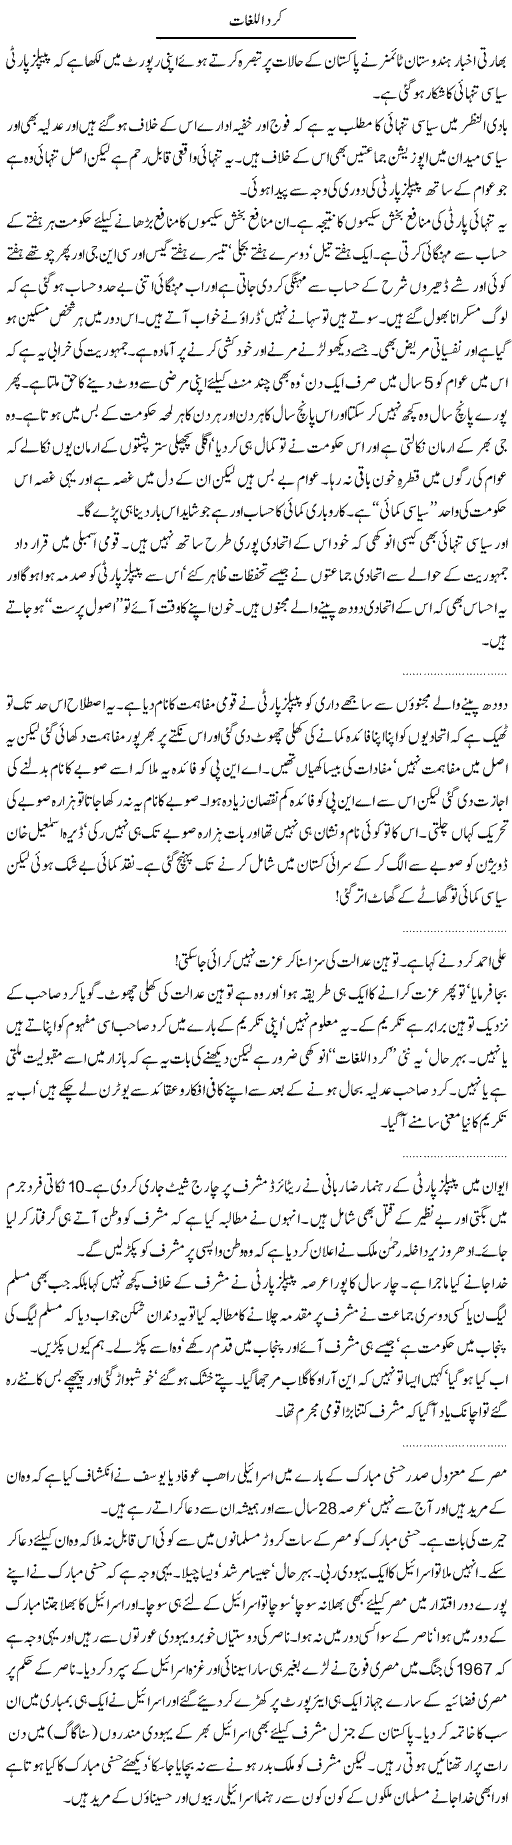 Peoples Party Express Column Abdullah Tariq 20 January 2012